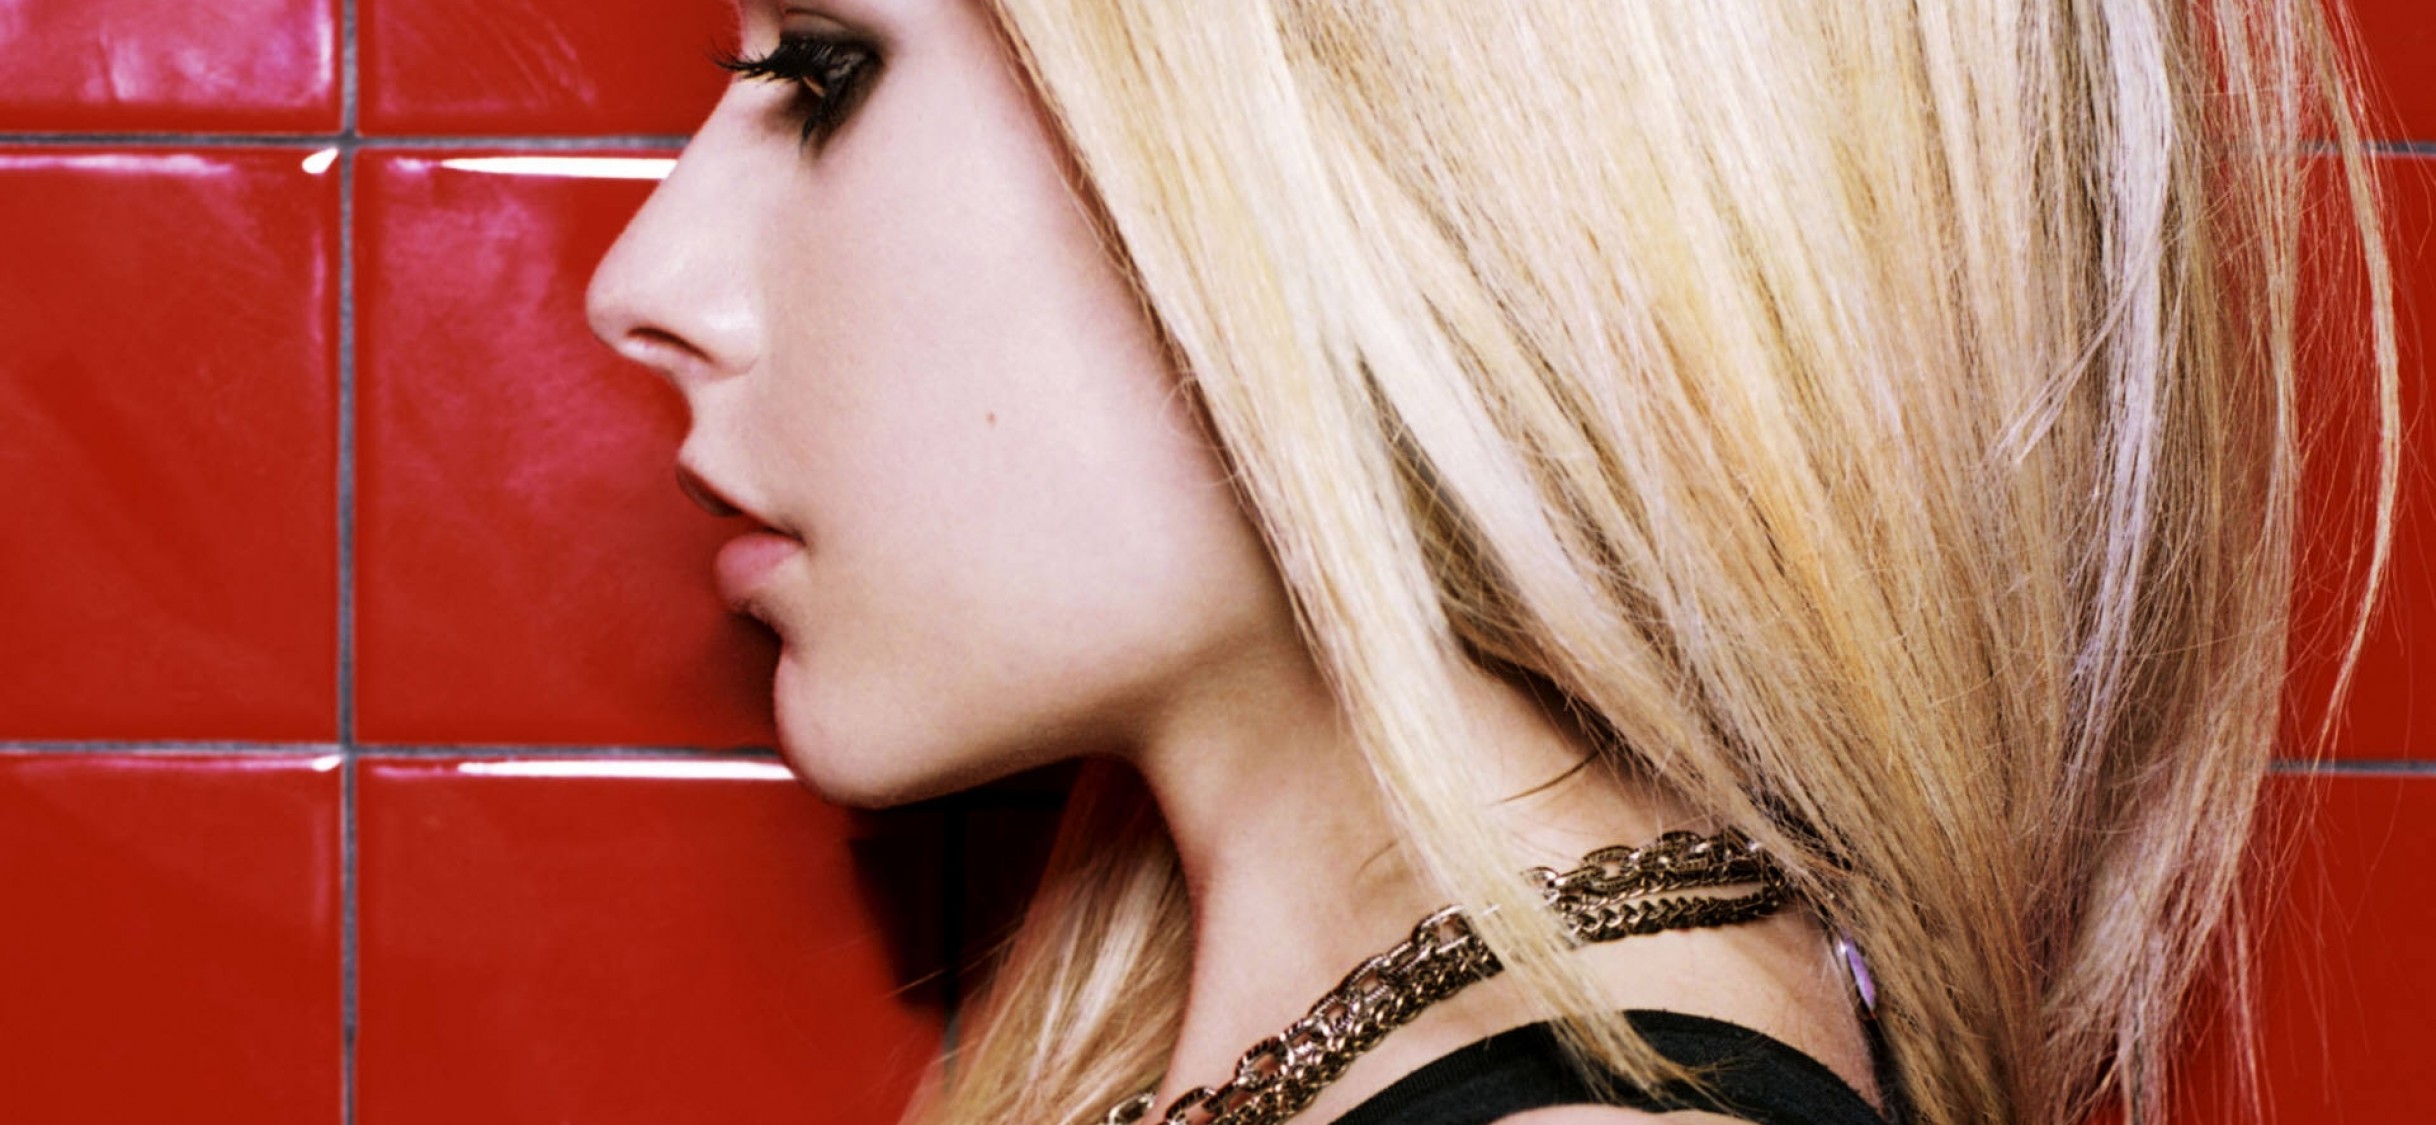 Avril Lavigne - B-Sides HD Wallpaper iPhone X - HD ...